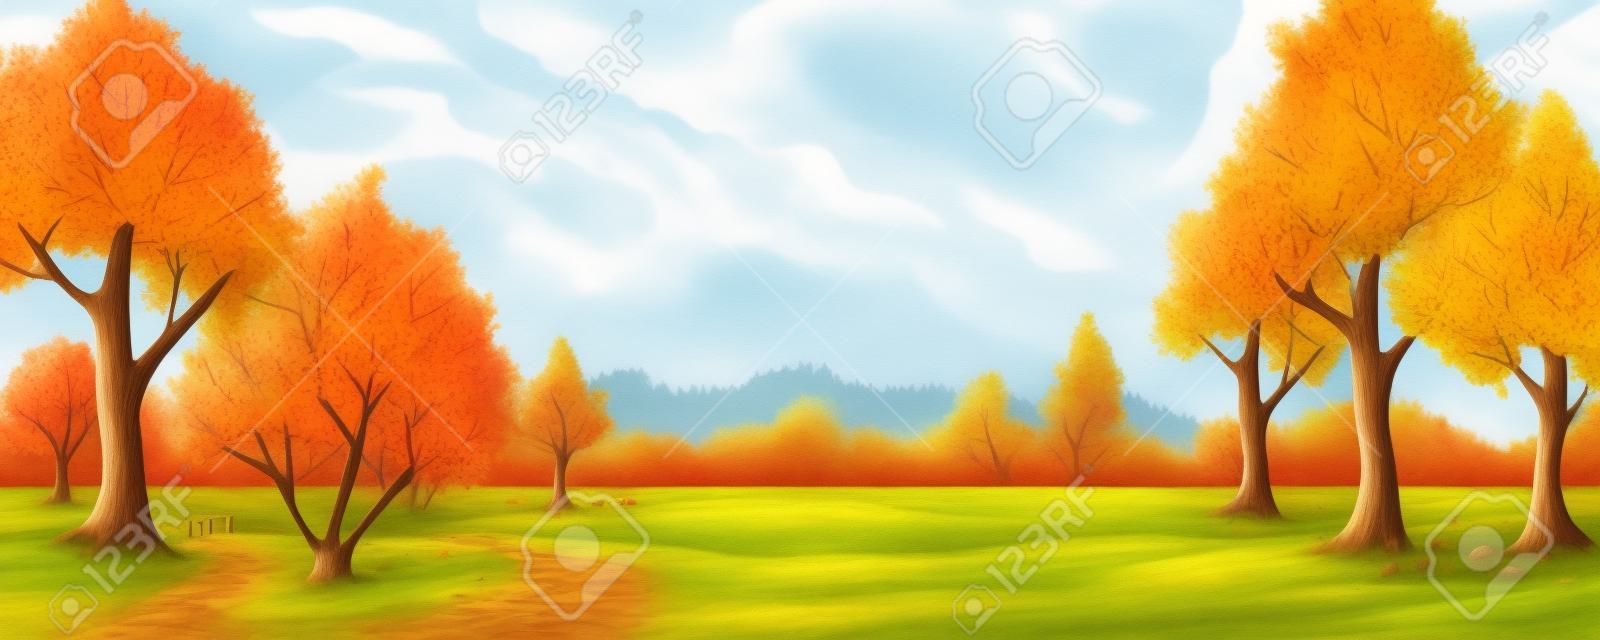 Ilustração dos desenhos animados da paisagem rural do outono